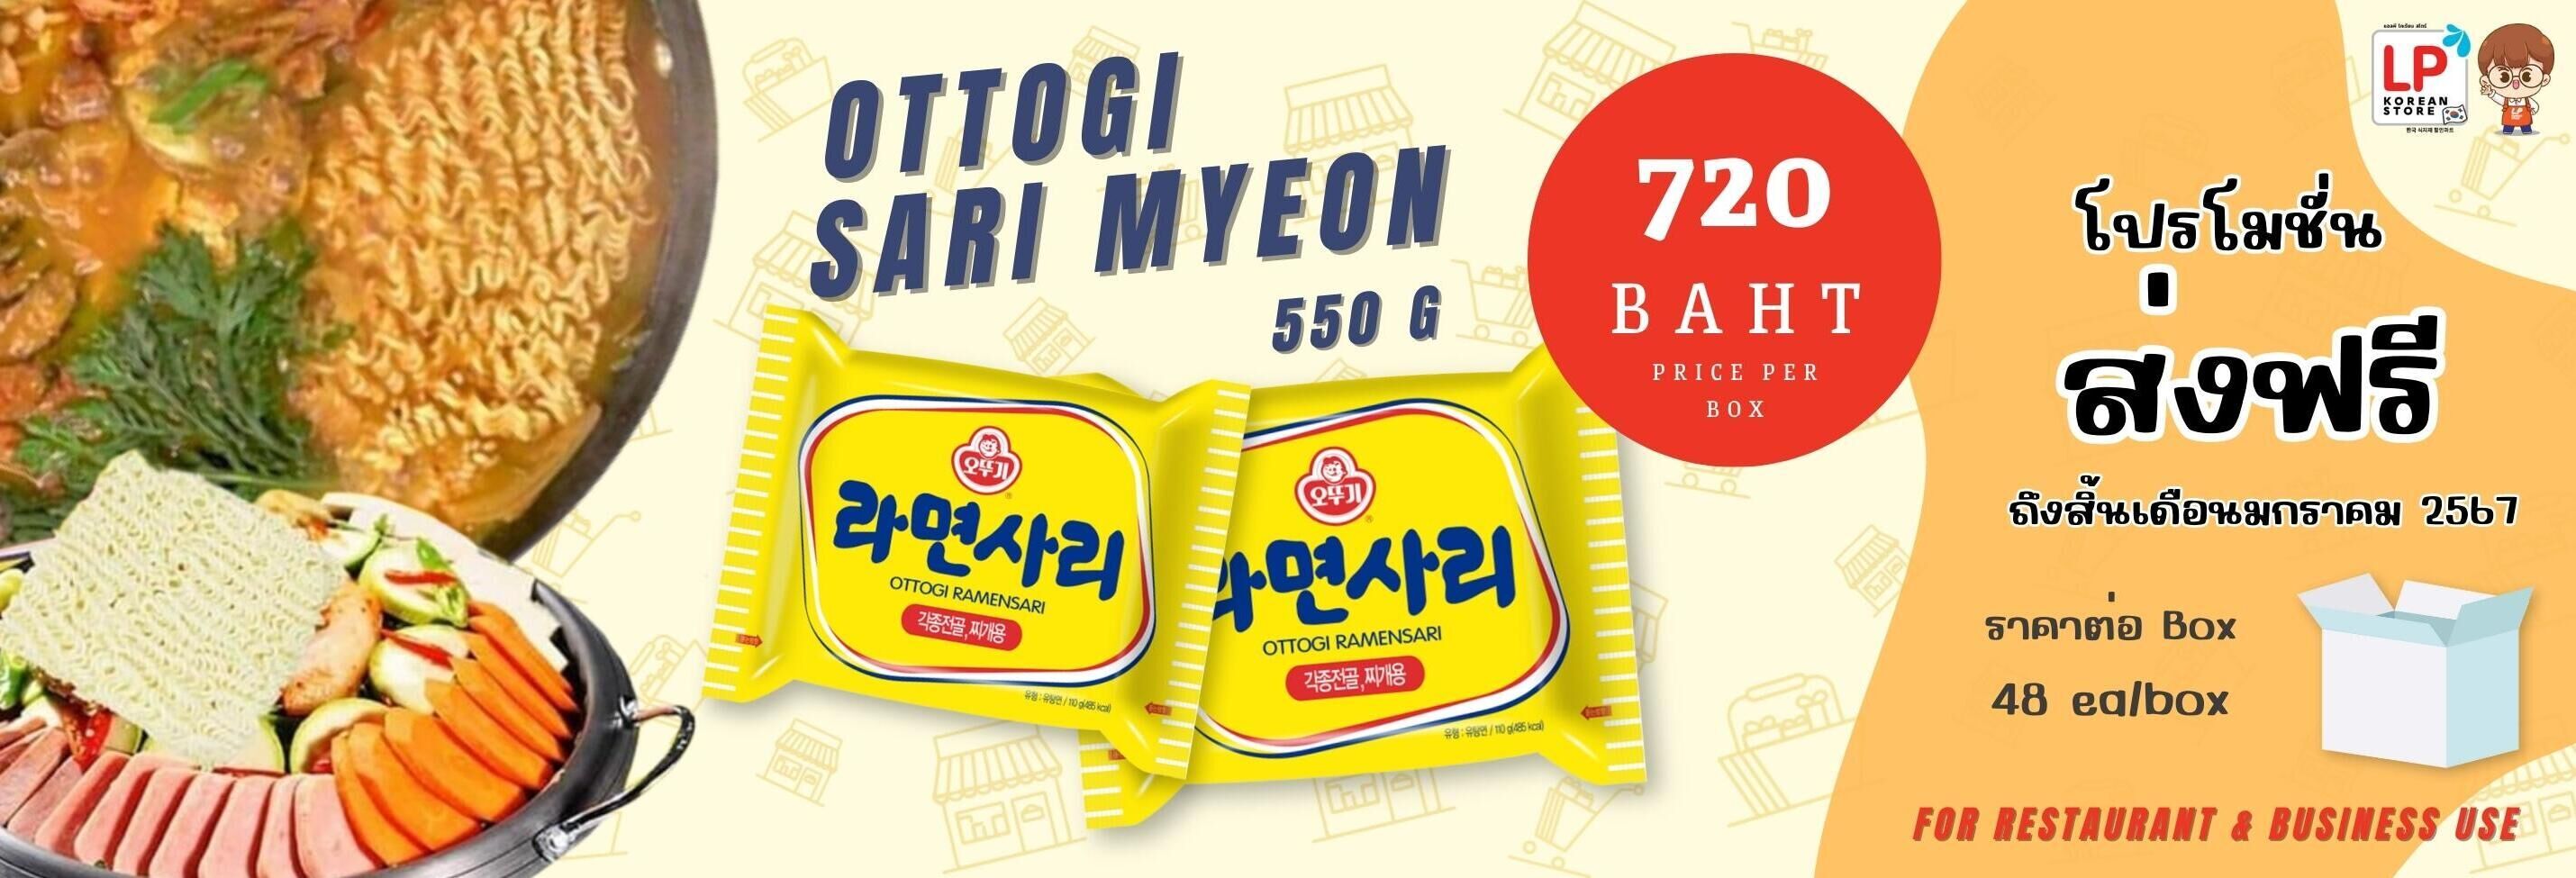 Ottogi Sari Myeon